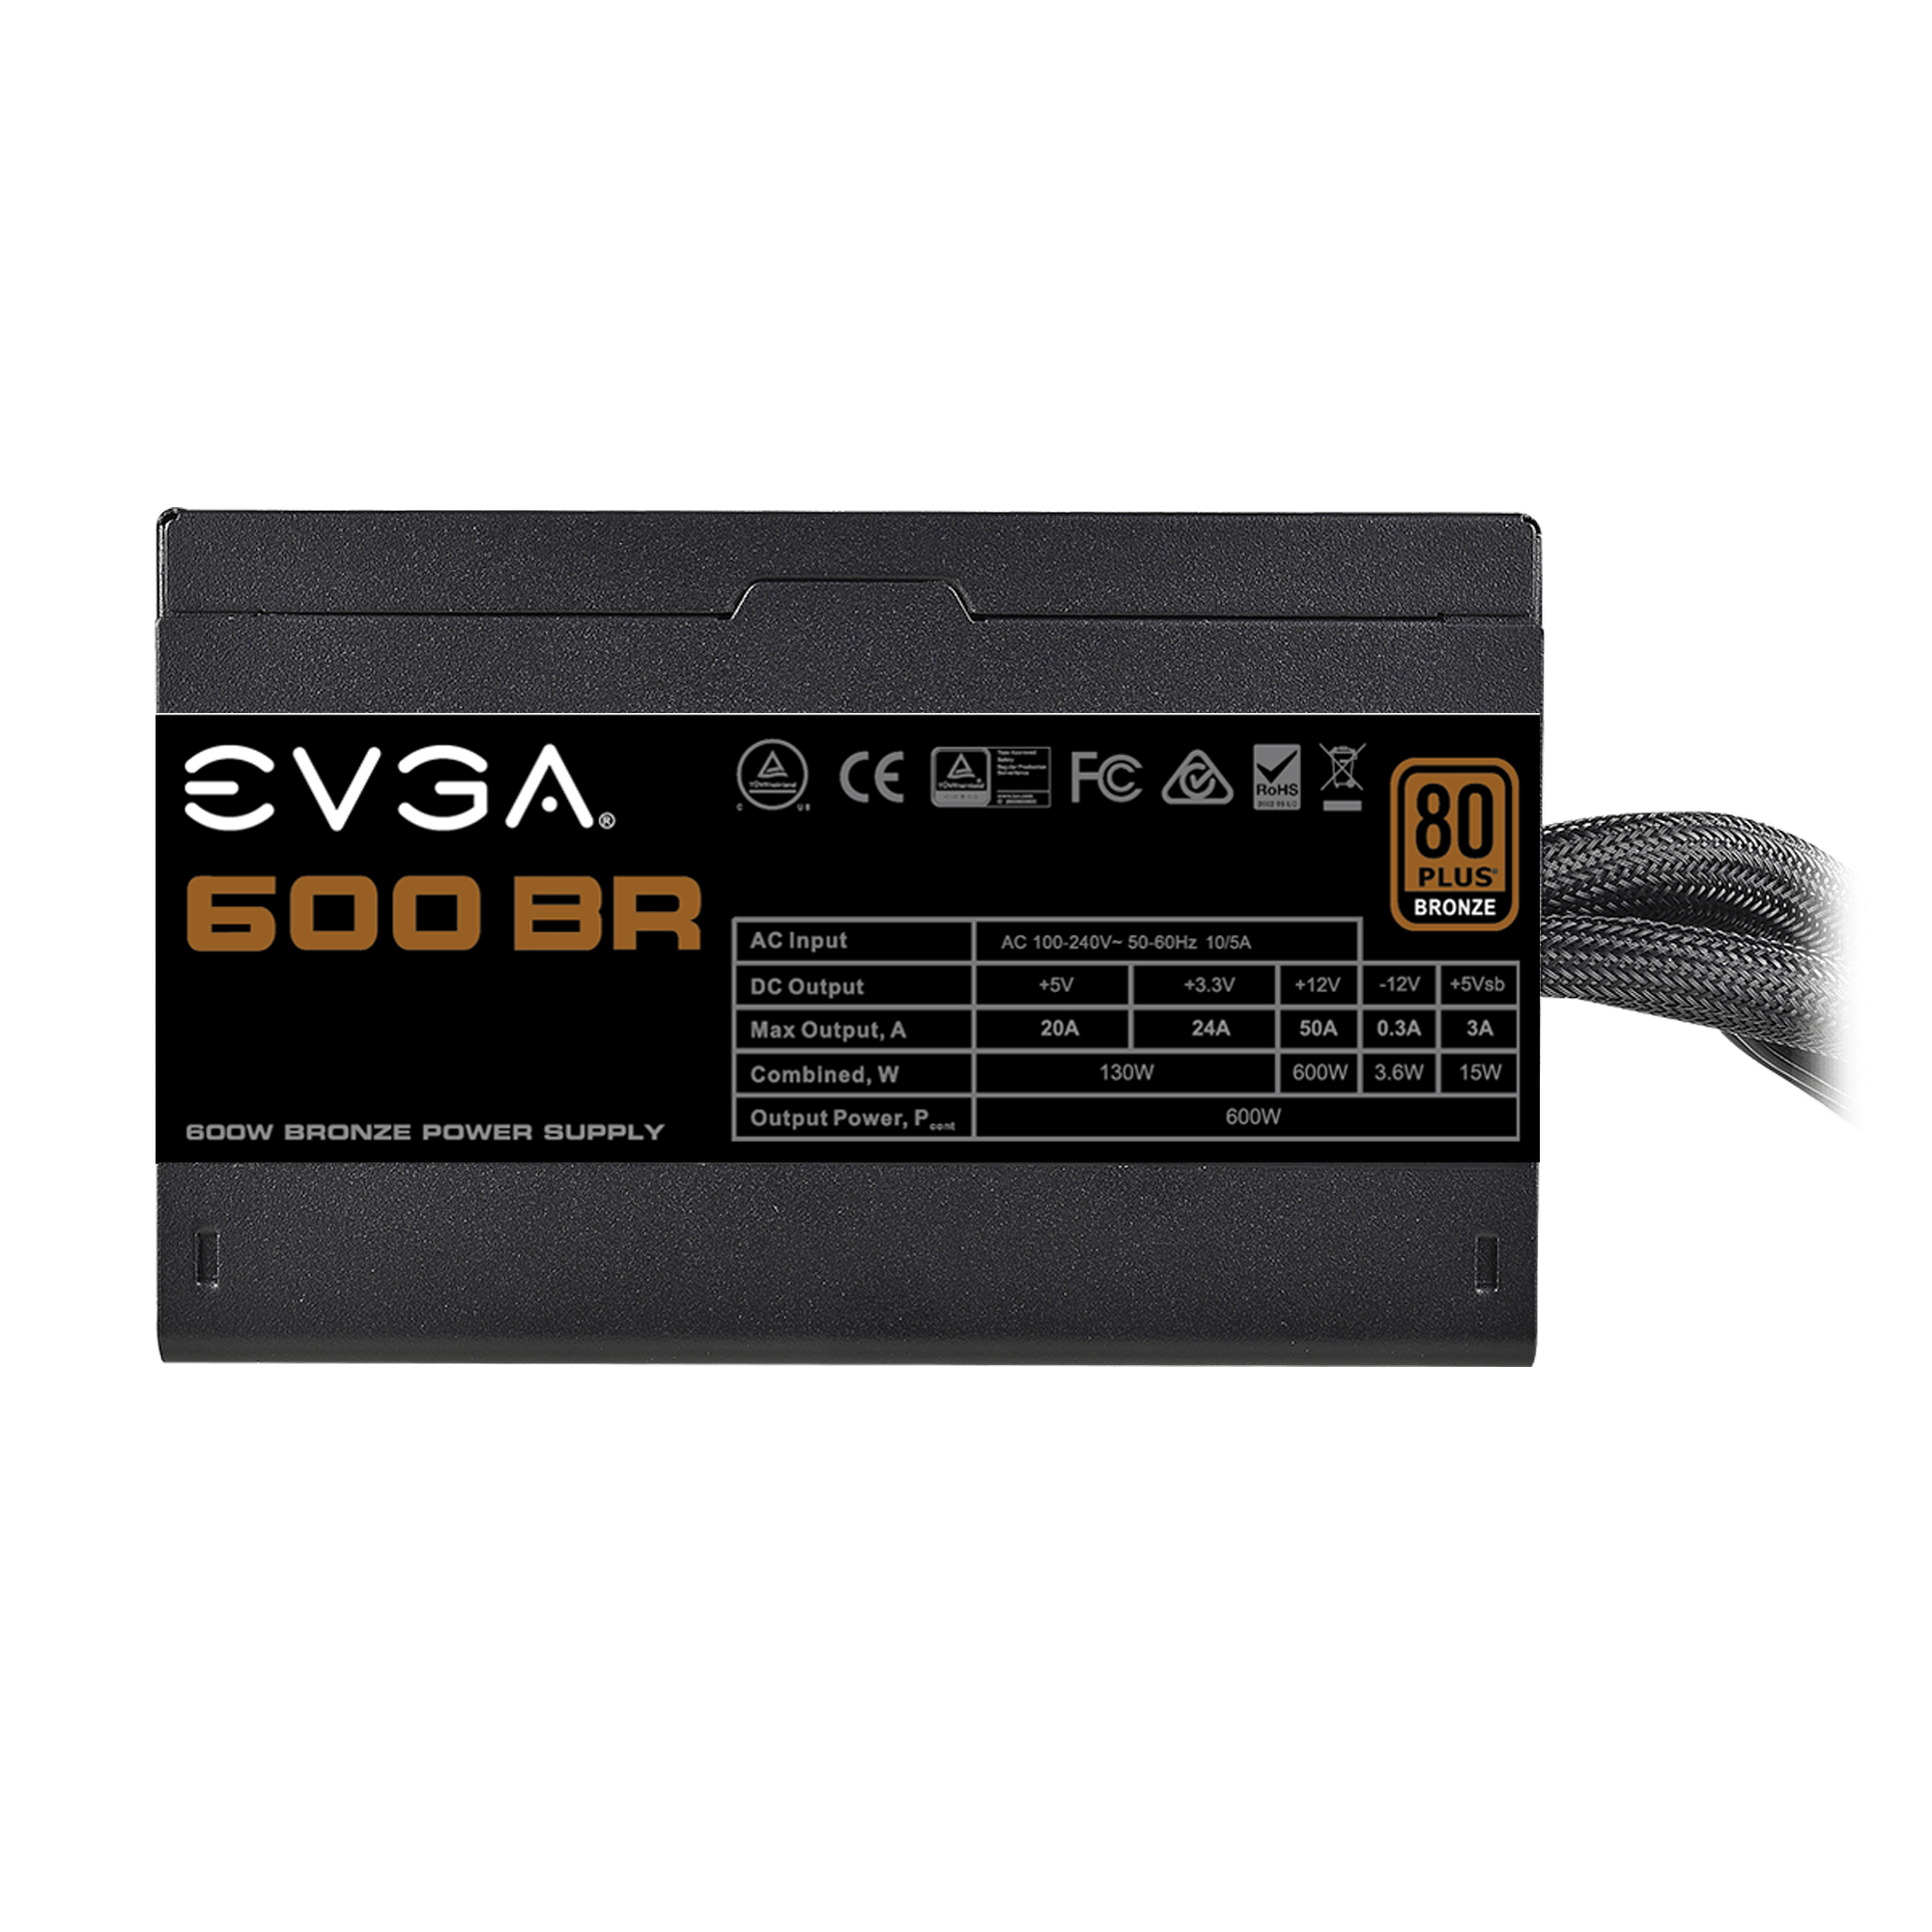 EVGA 600 BR 80+ BRONZE 600W NON-MODULAR POWER SUPPLY - 100-BR-0600-K3